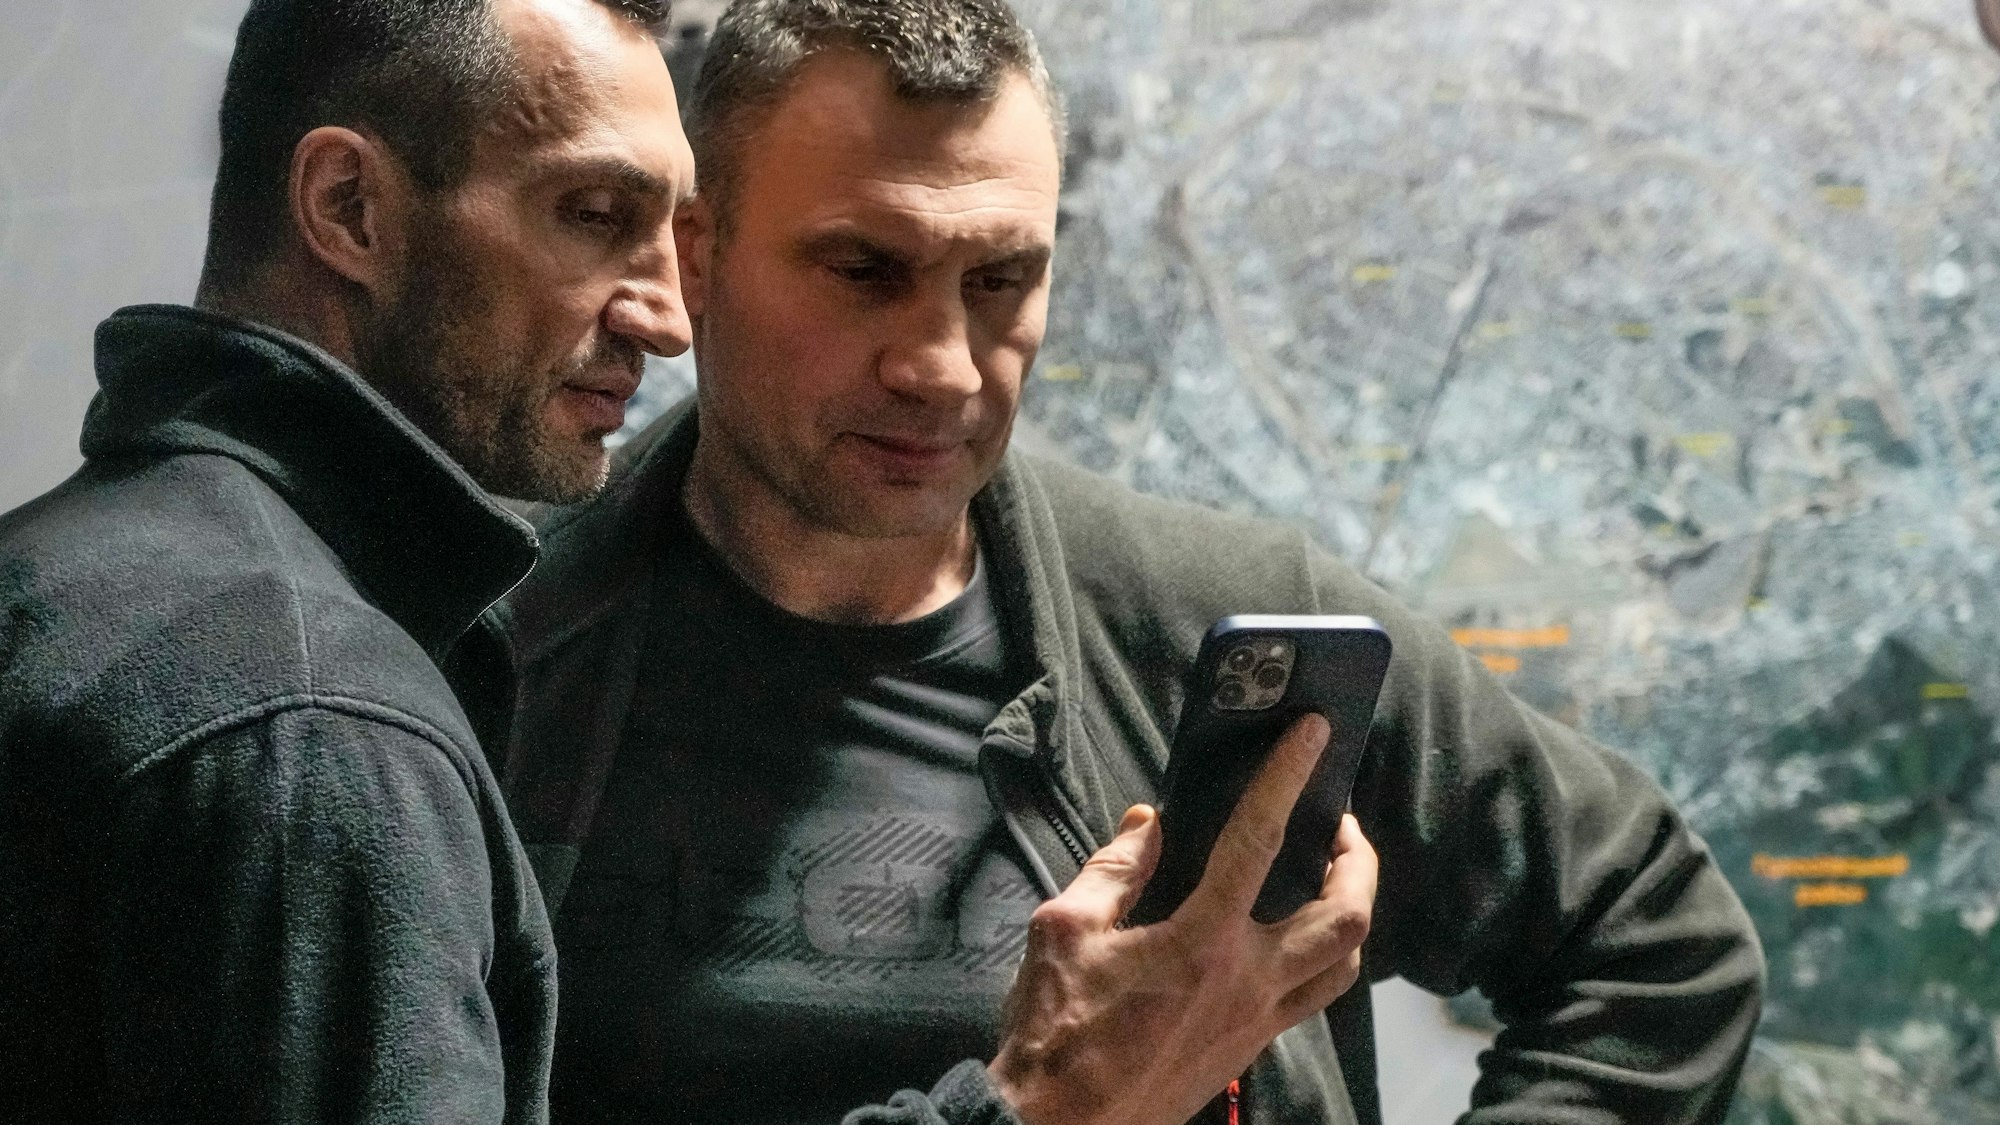 Vitali Klitschko (r), Bürgermeister von Kiew und ehemaliger Box-Profi, und sein Bruder Wladimir Klitschko, ebenfalls ehemaliger Box-Profi, schauen auf ein Smartphone im Rathaus in Kiew.